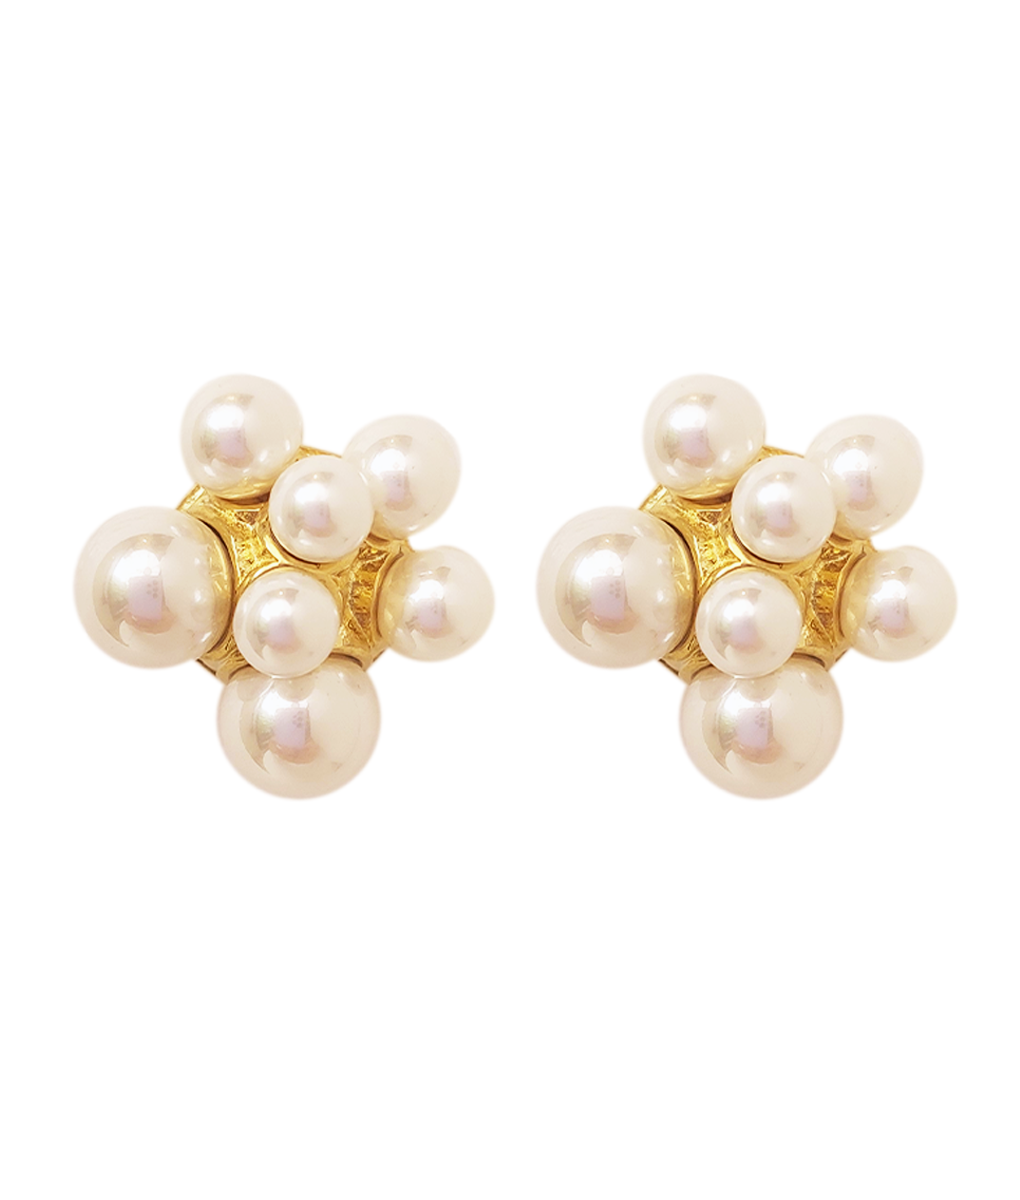 The Alyssa Pearl Earrings